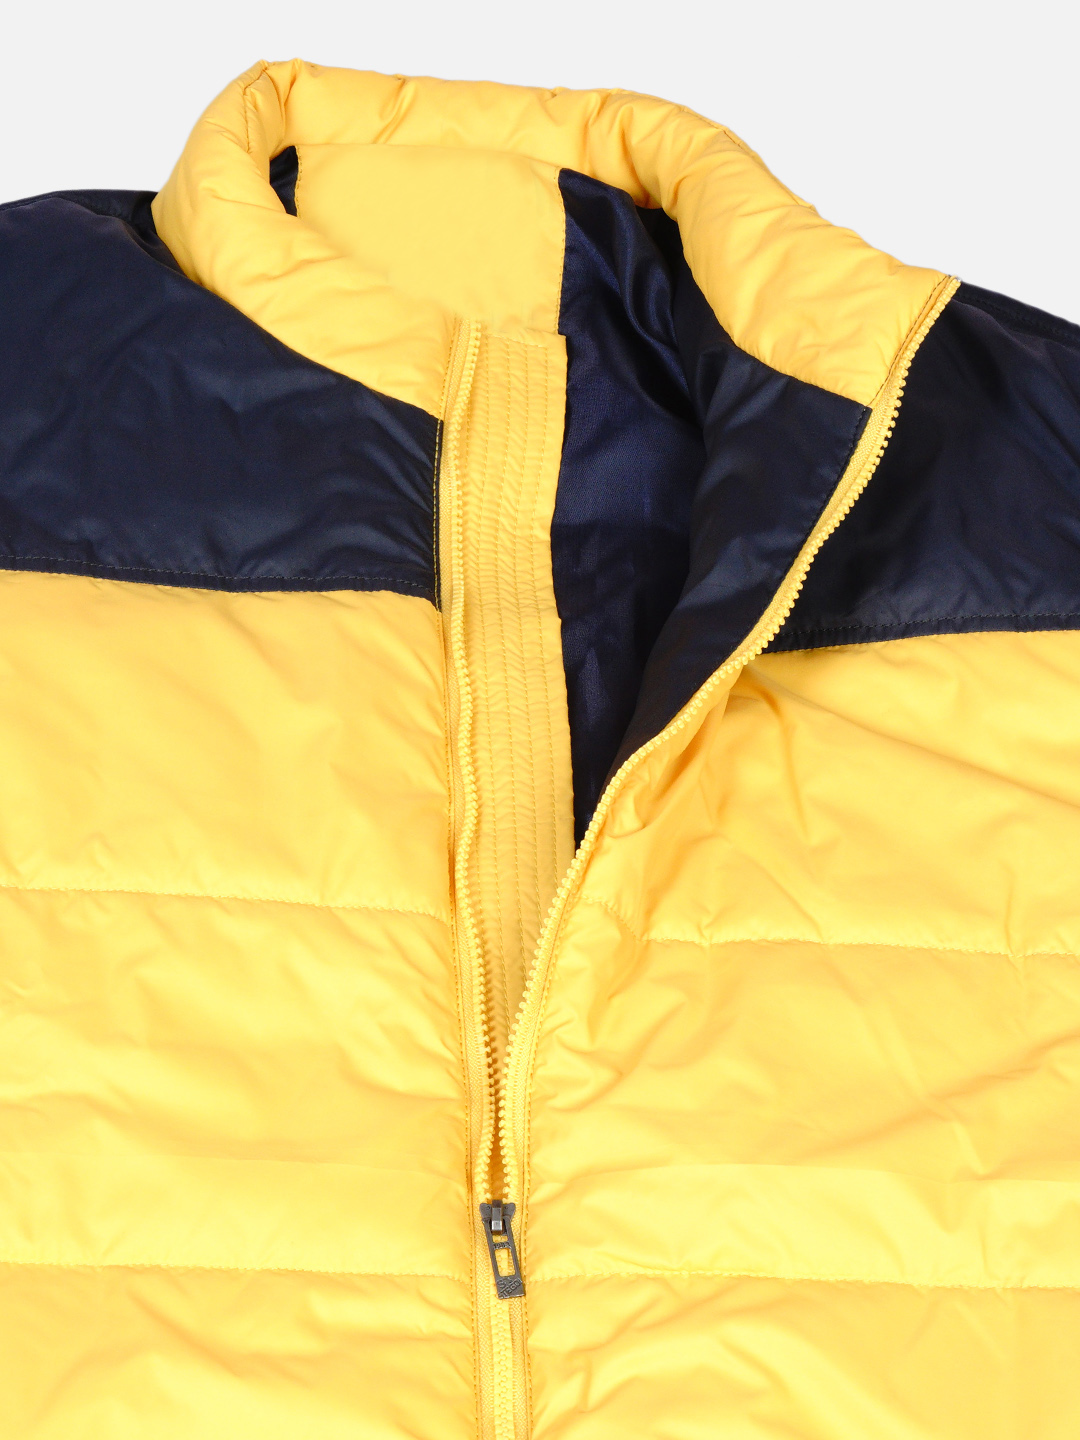 winterwear/jackets/JPJKT73005A/jpjkt73005a-2.jpg